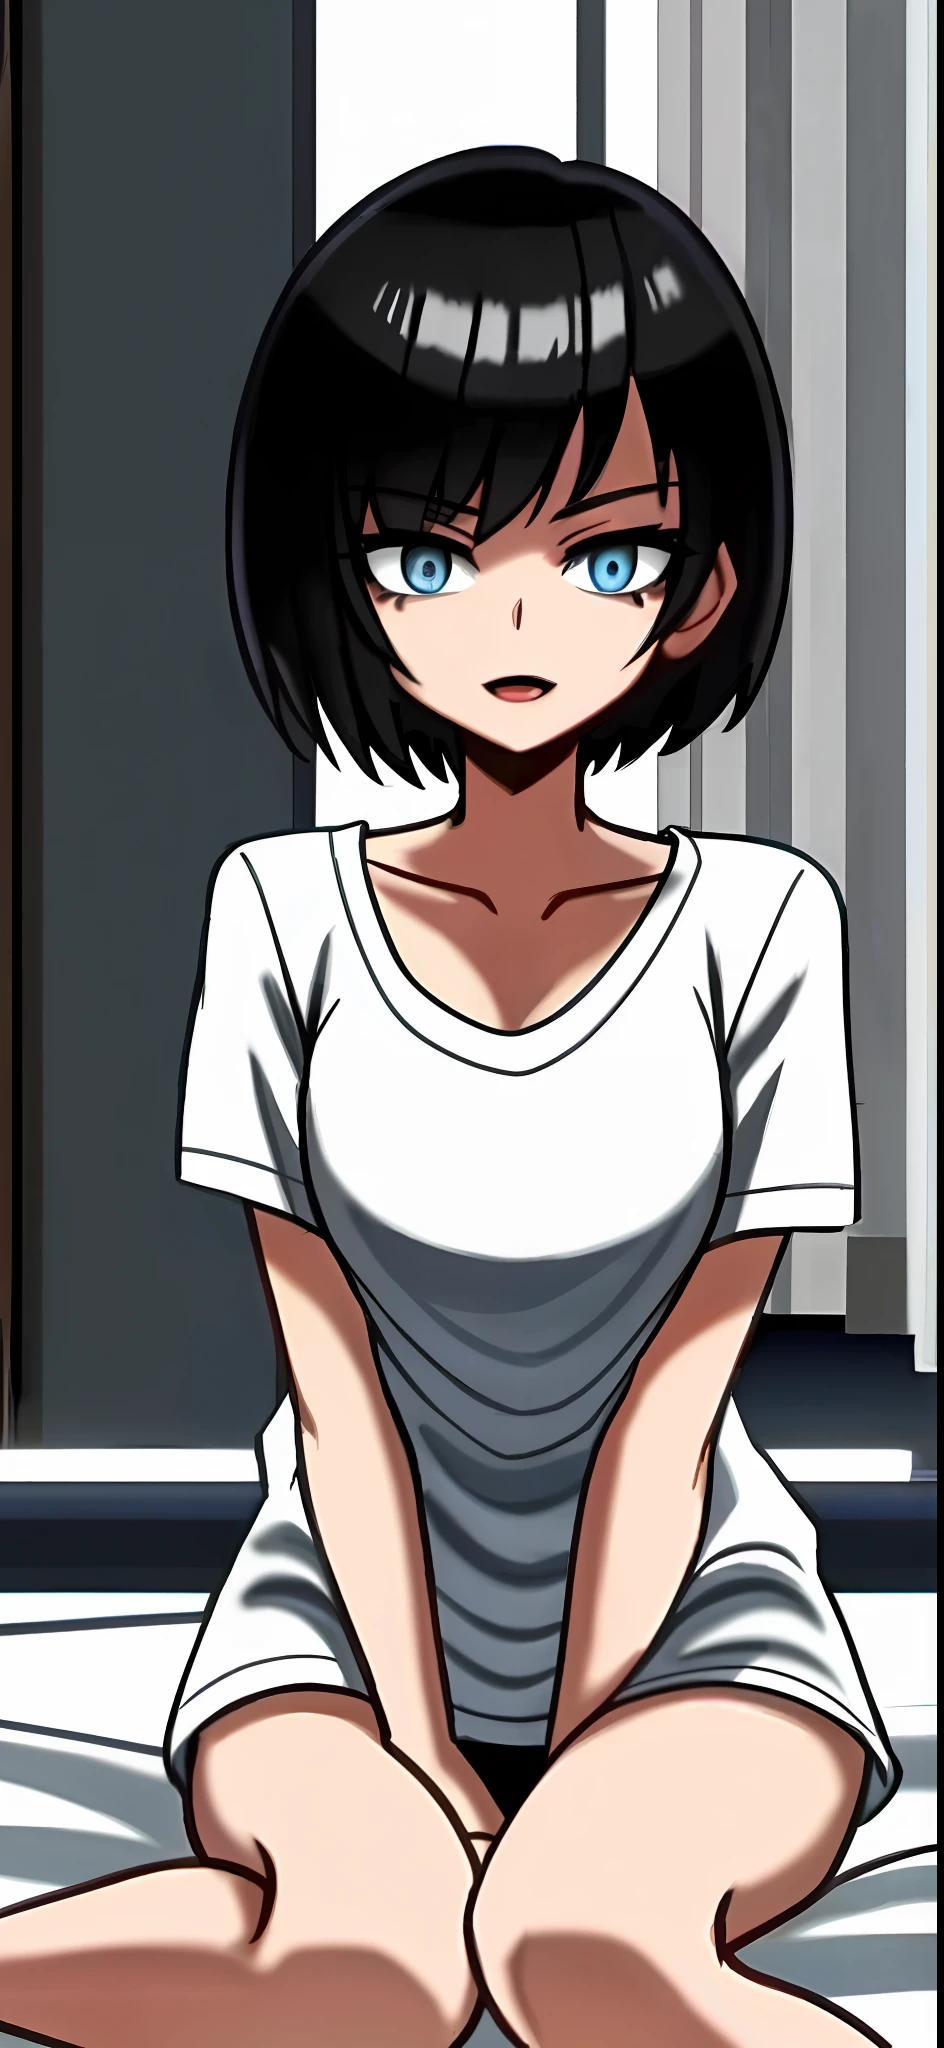 Schwarzhaariges Mädchen mit Kurzhaarschnitt und blauen Augen, halbnackt auf einem weißen Bett sitzend, glättet ihr Haar mit der Hand, bent her legs under her, schwarzes T-Shirt, halboffener Mund, sexy, alter Anime-Stil, abgedunkelte Beleuchtung